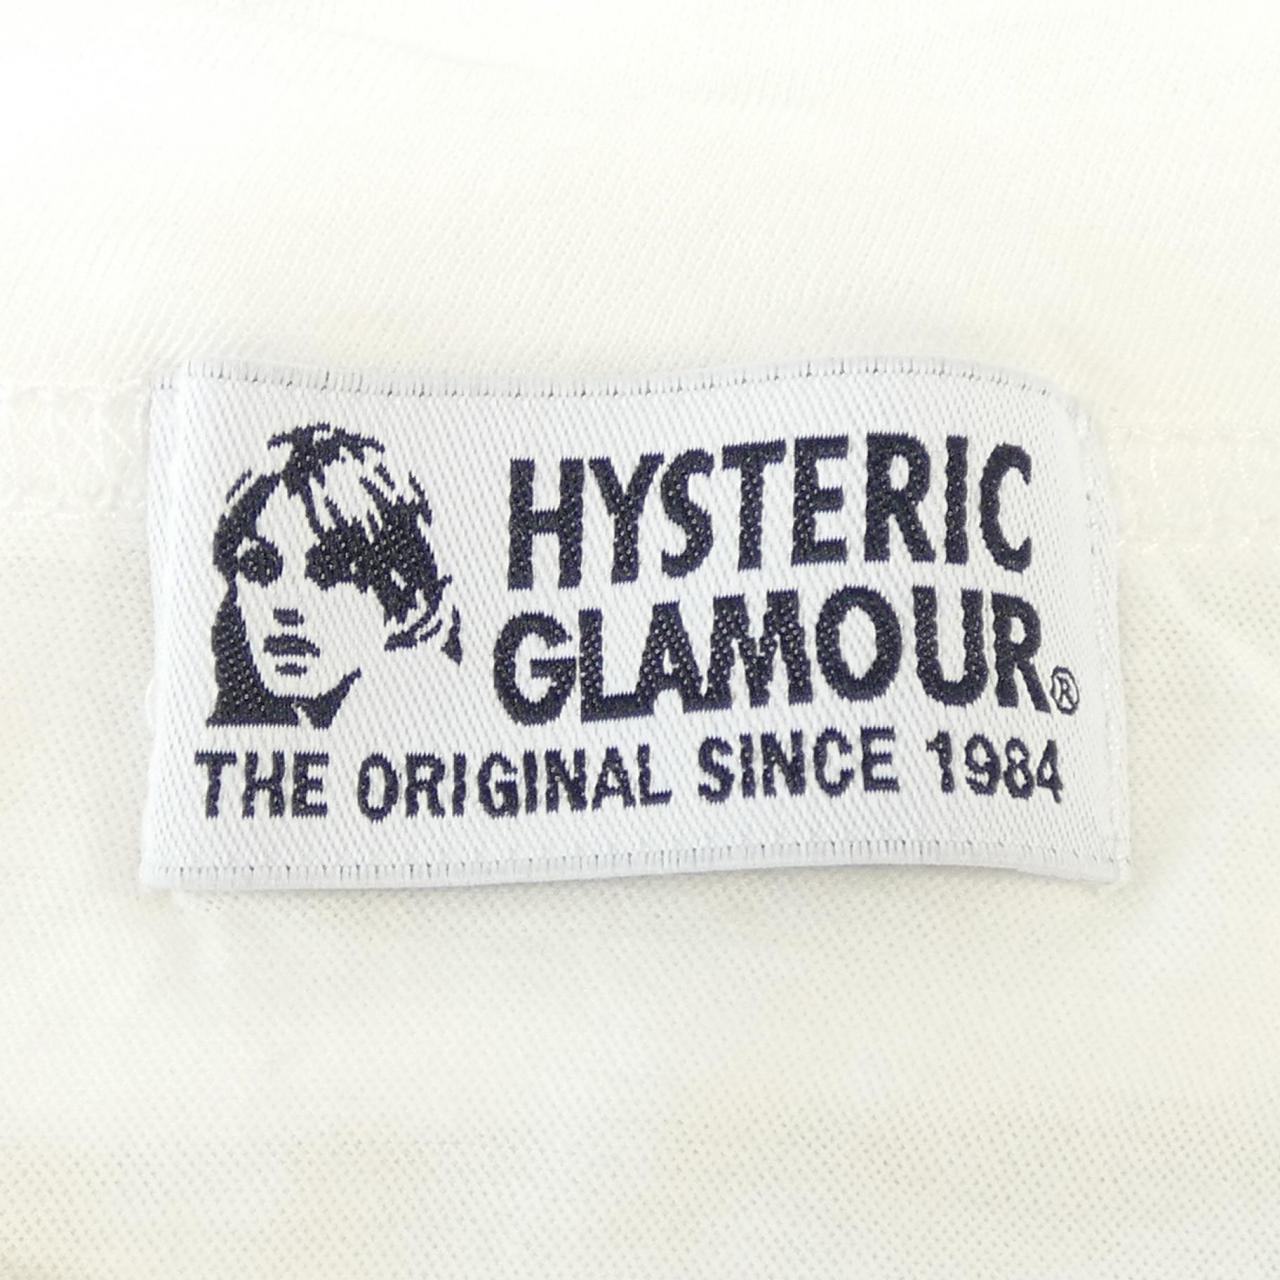 ヒステリックグラマー HYSTERIC GLAMOUR Tシャツ